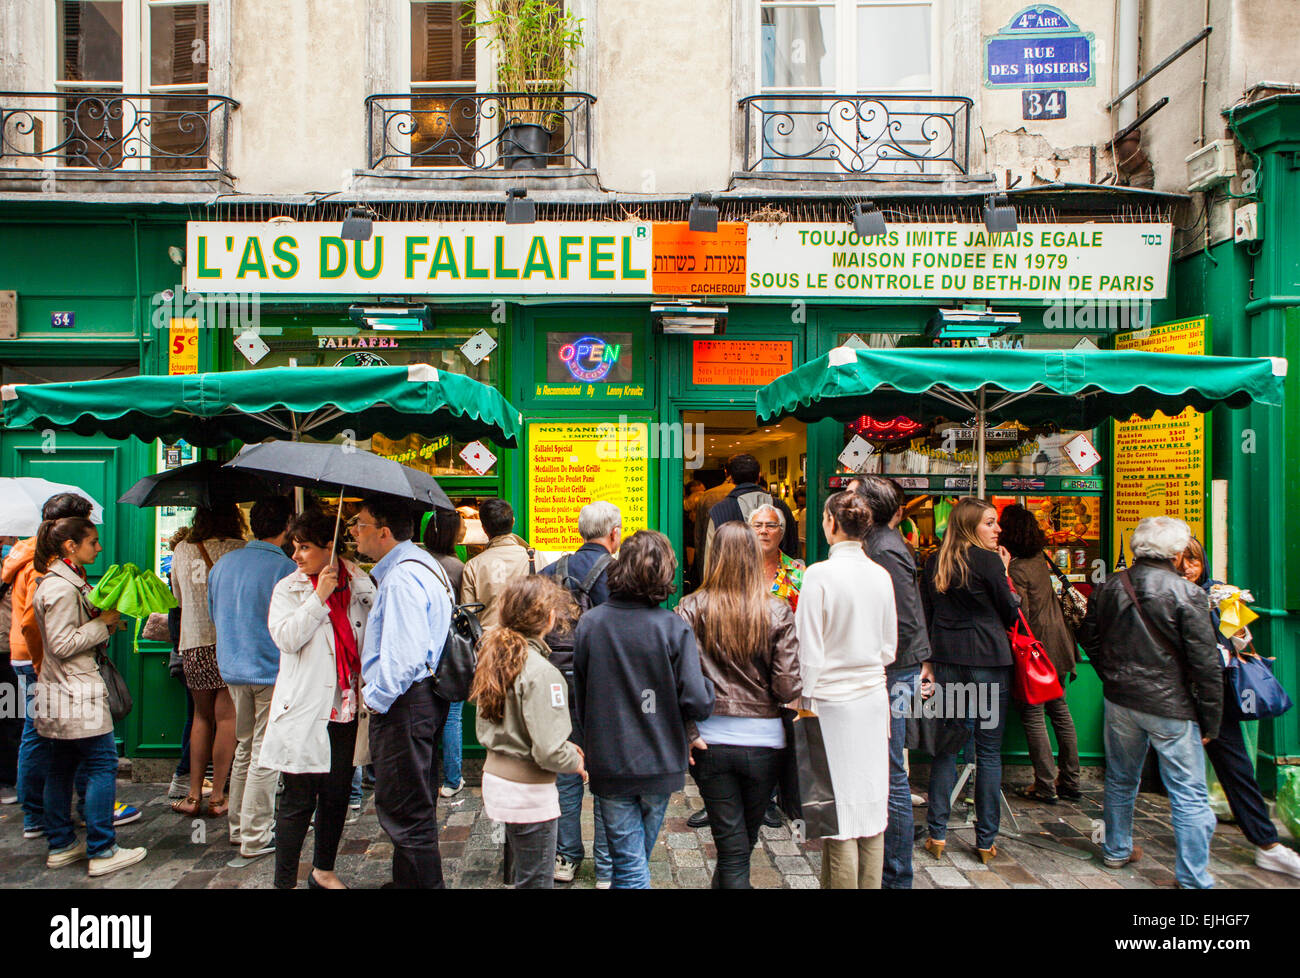 Falafel shop in the Marais, Paris, France Stock Photo: 80291435 - Alamy